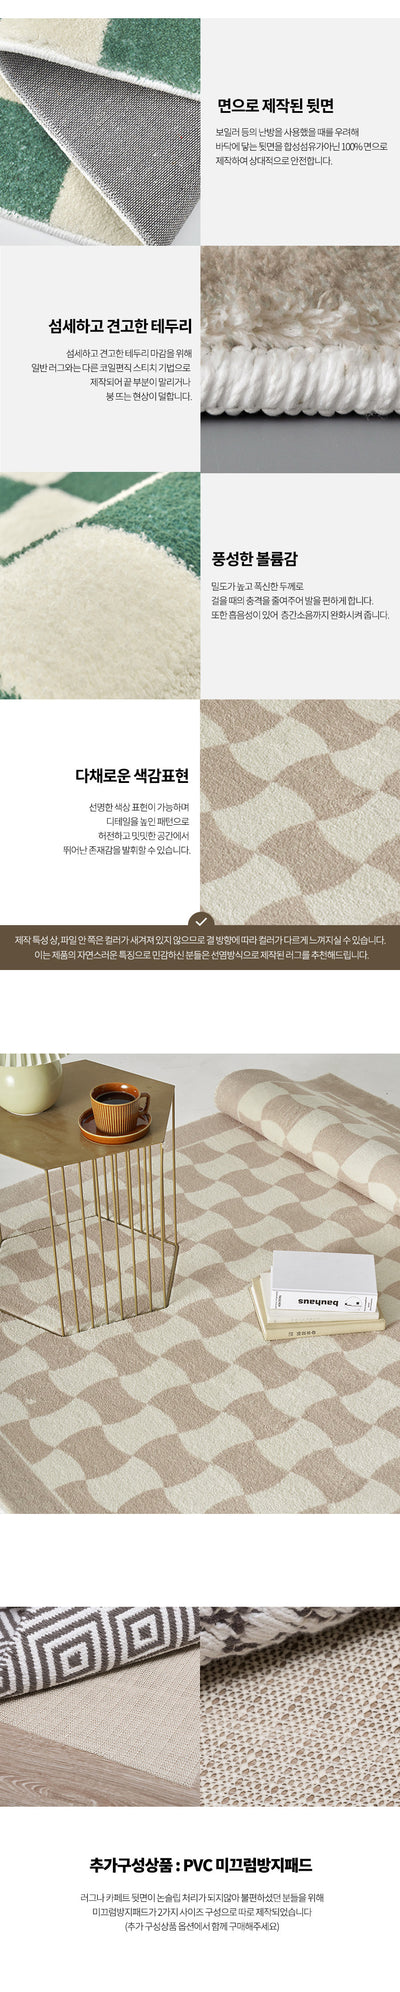 Melo Beige pattern interior rug